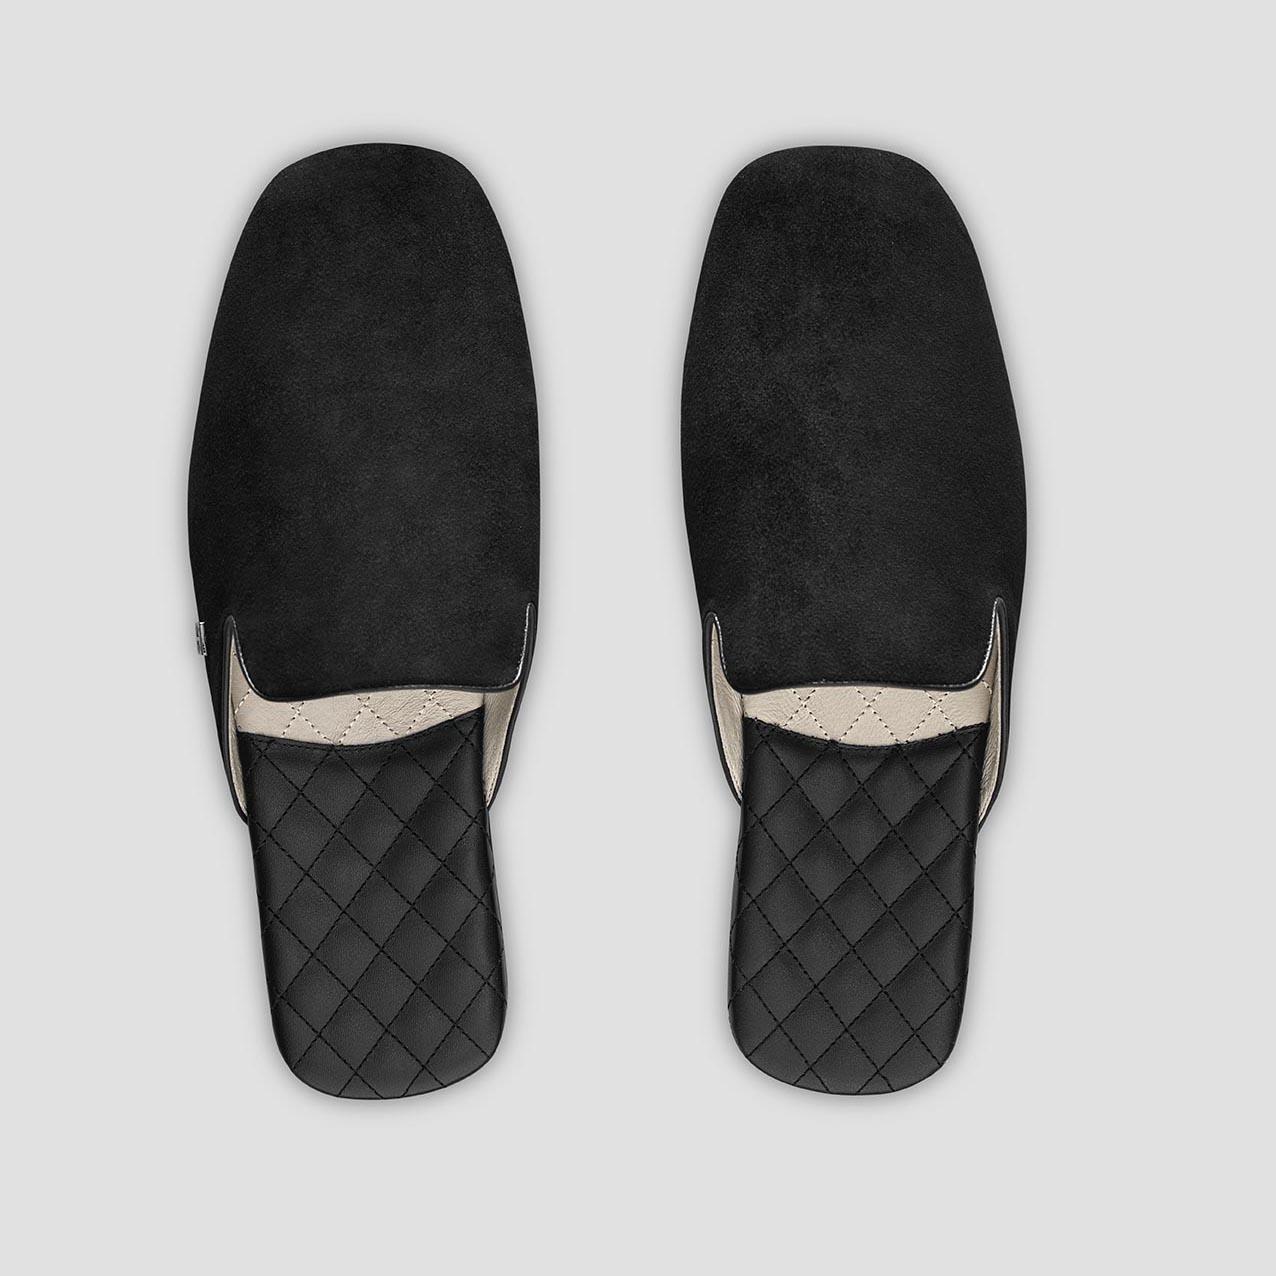 Тапочки Togas Реон черные мужские кожаные, размер 46-47 держатель для шланга размер s на липучке чёрный